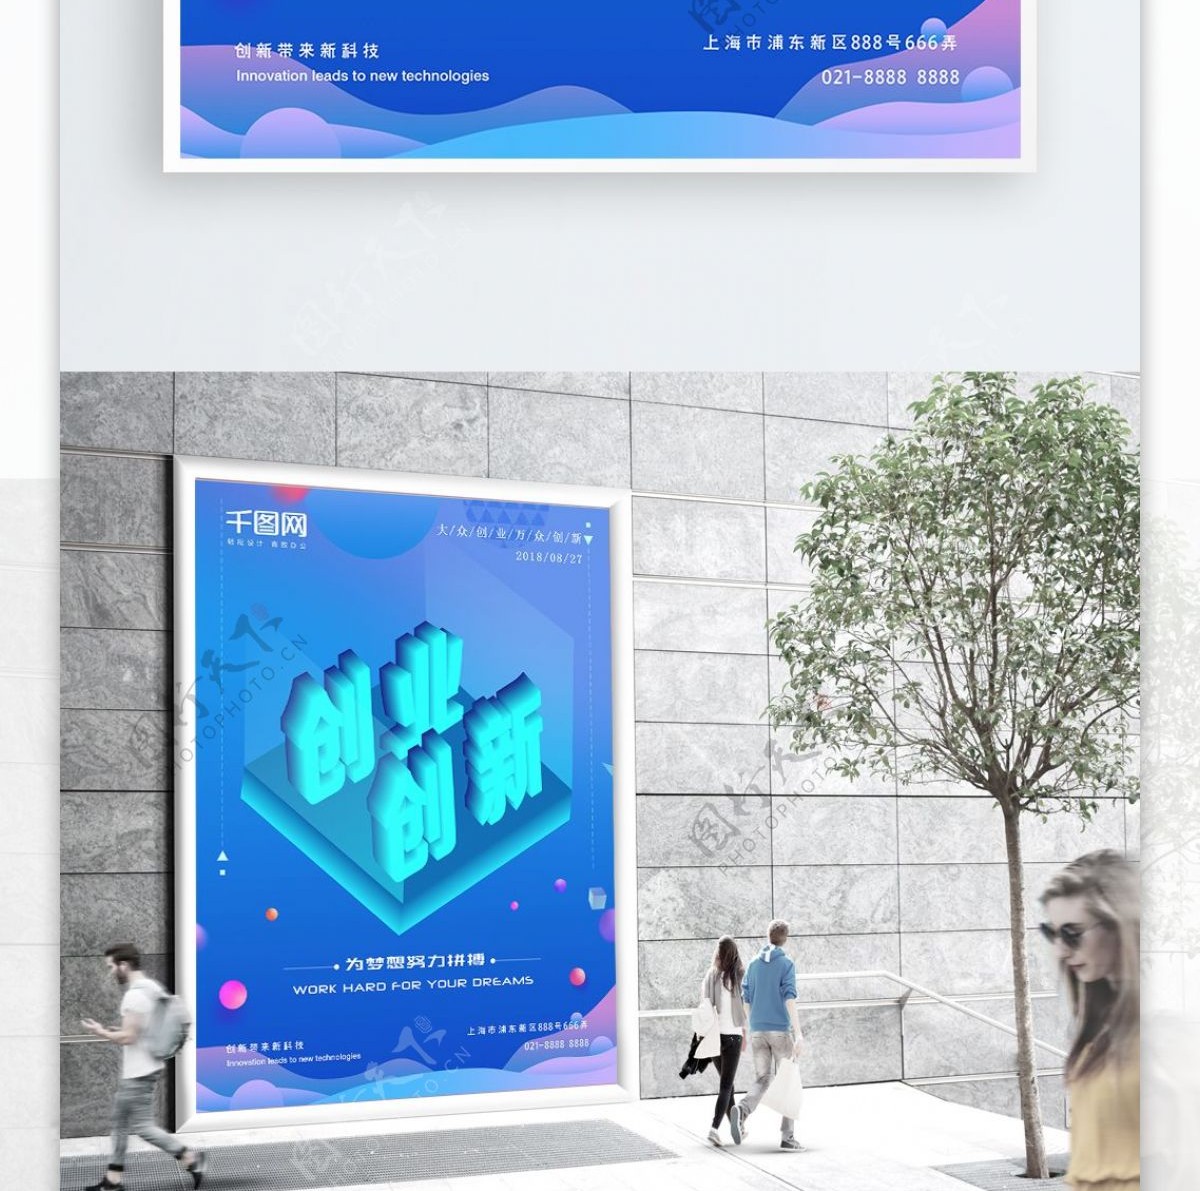 2.5D创新创业科技海报